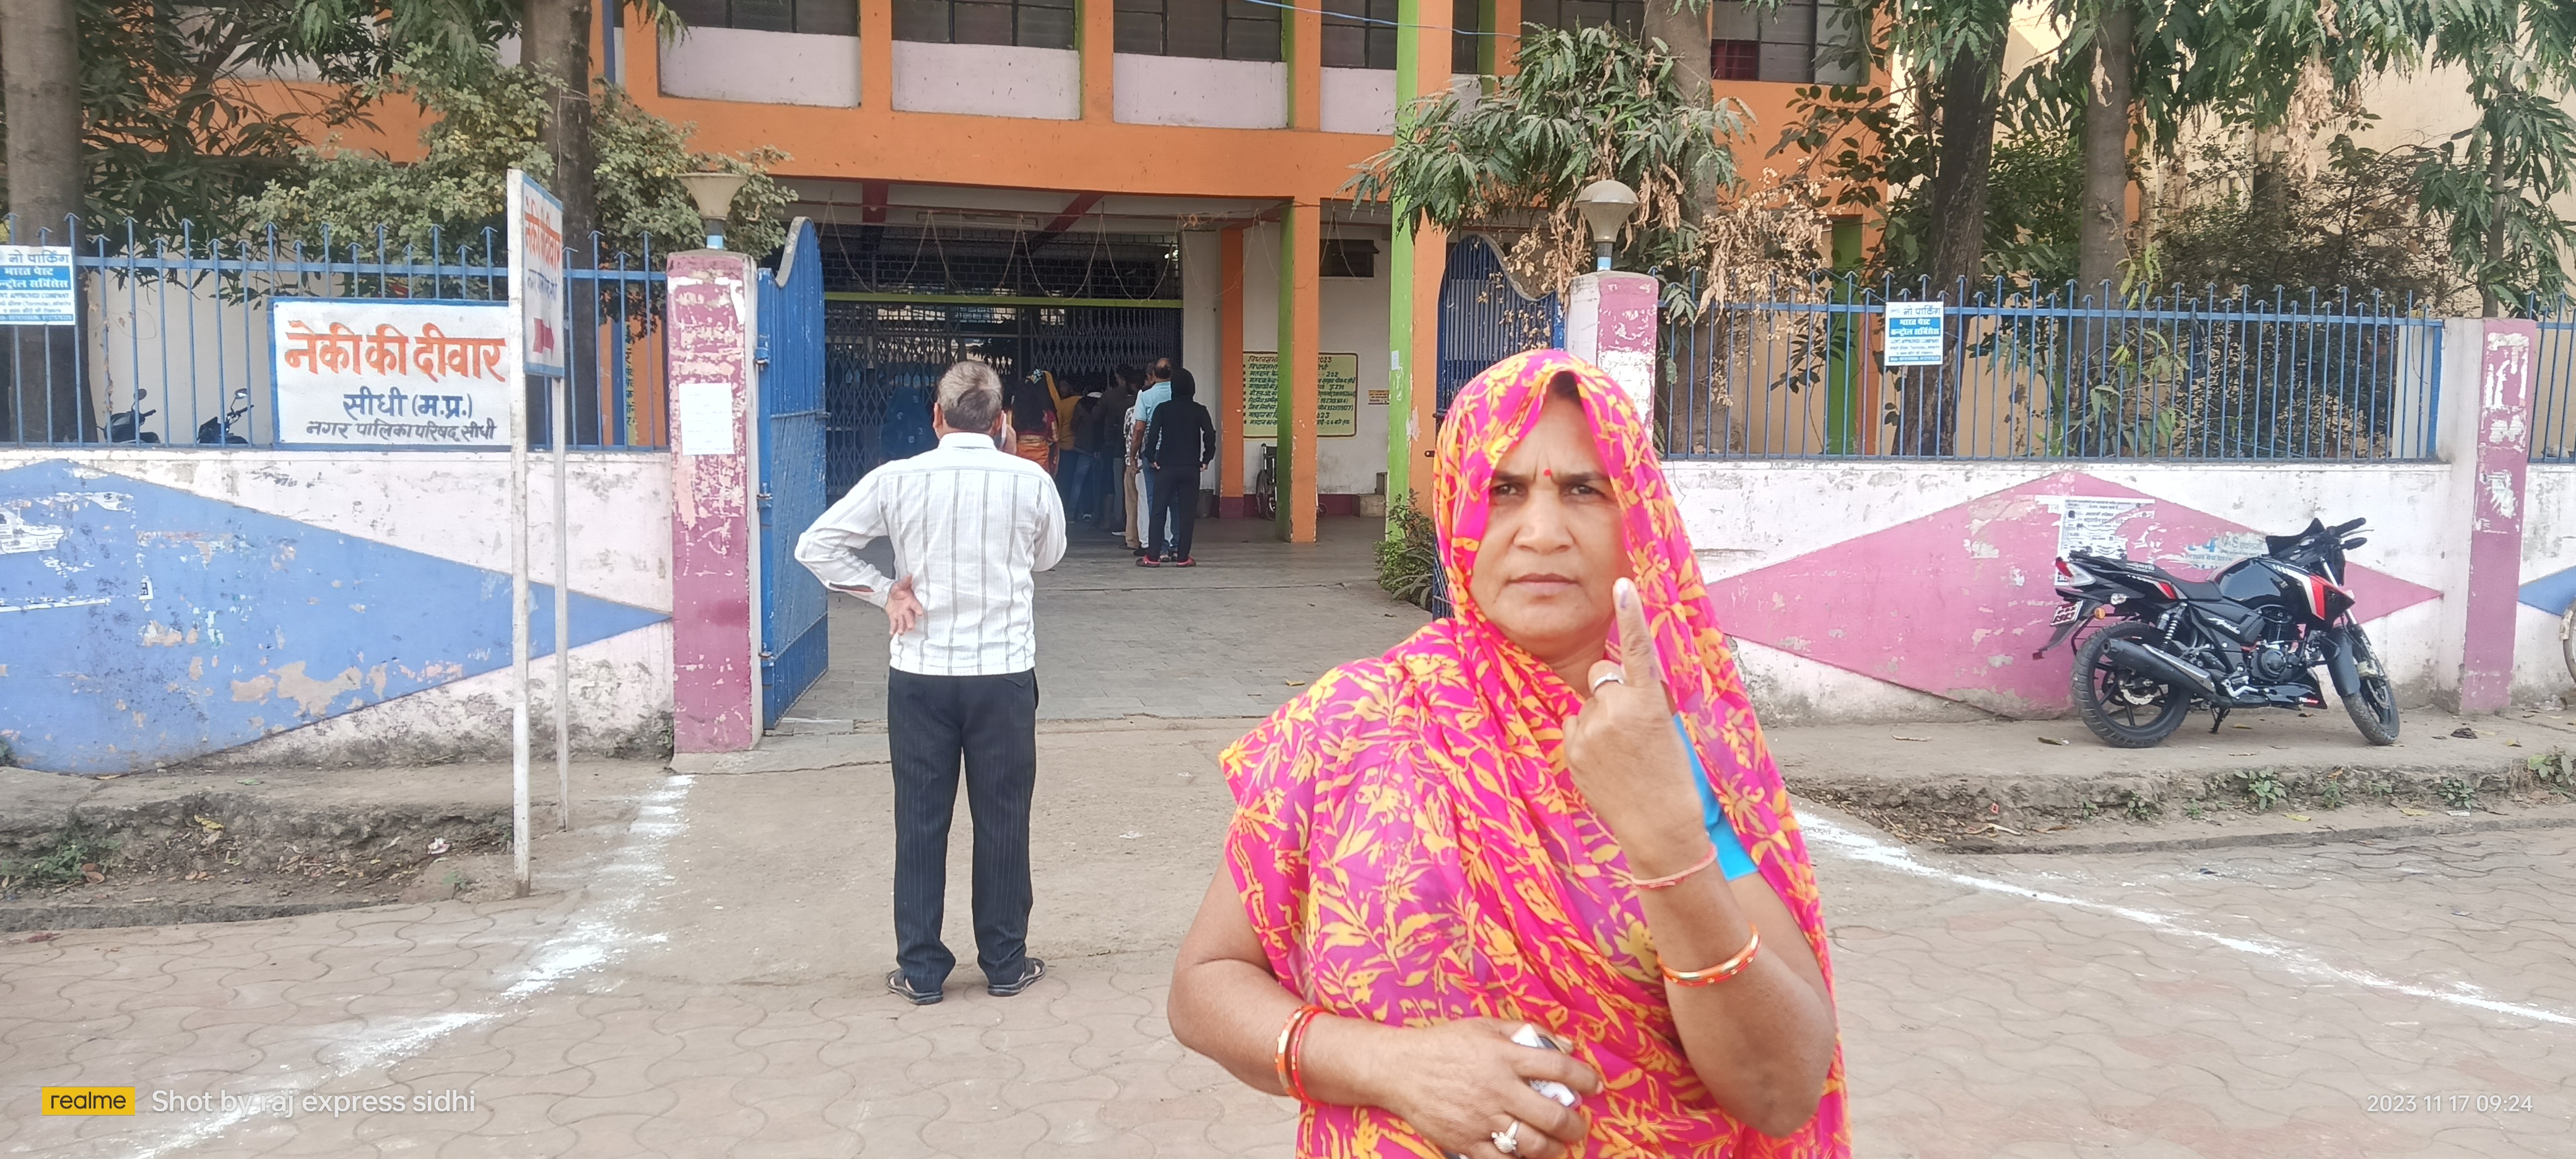 सीधी जिले में शांतिपूर्ण ढंग से मतदान जारी, महज 2 घंटे में हुई बंपर वोटिंग